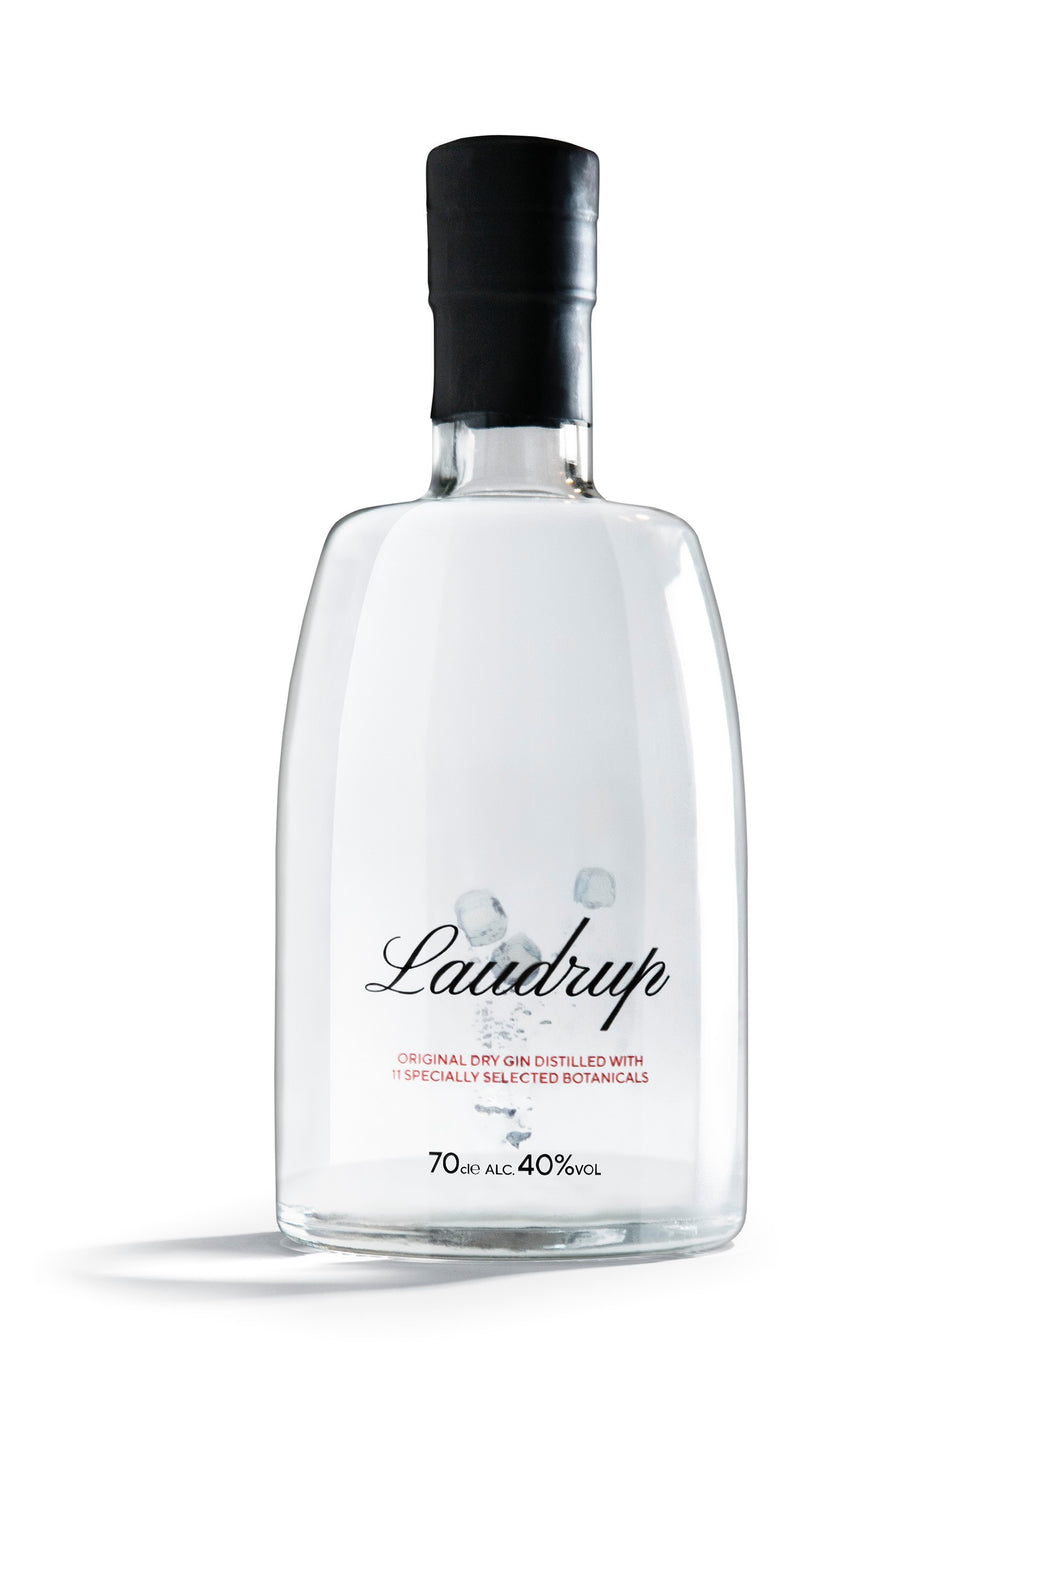 Laudrup Original Dry Gin